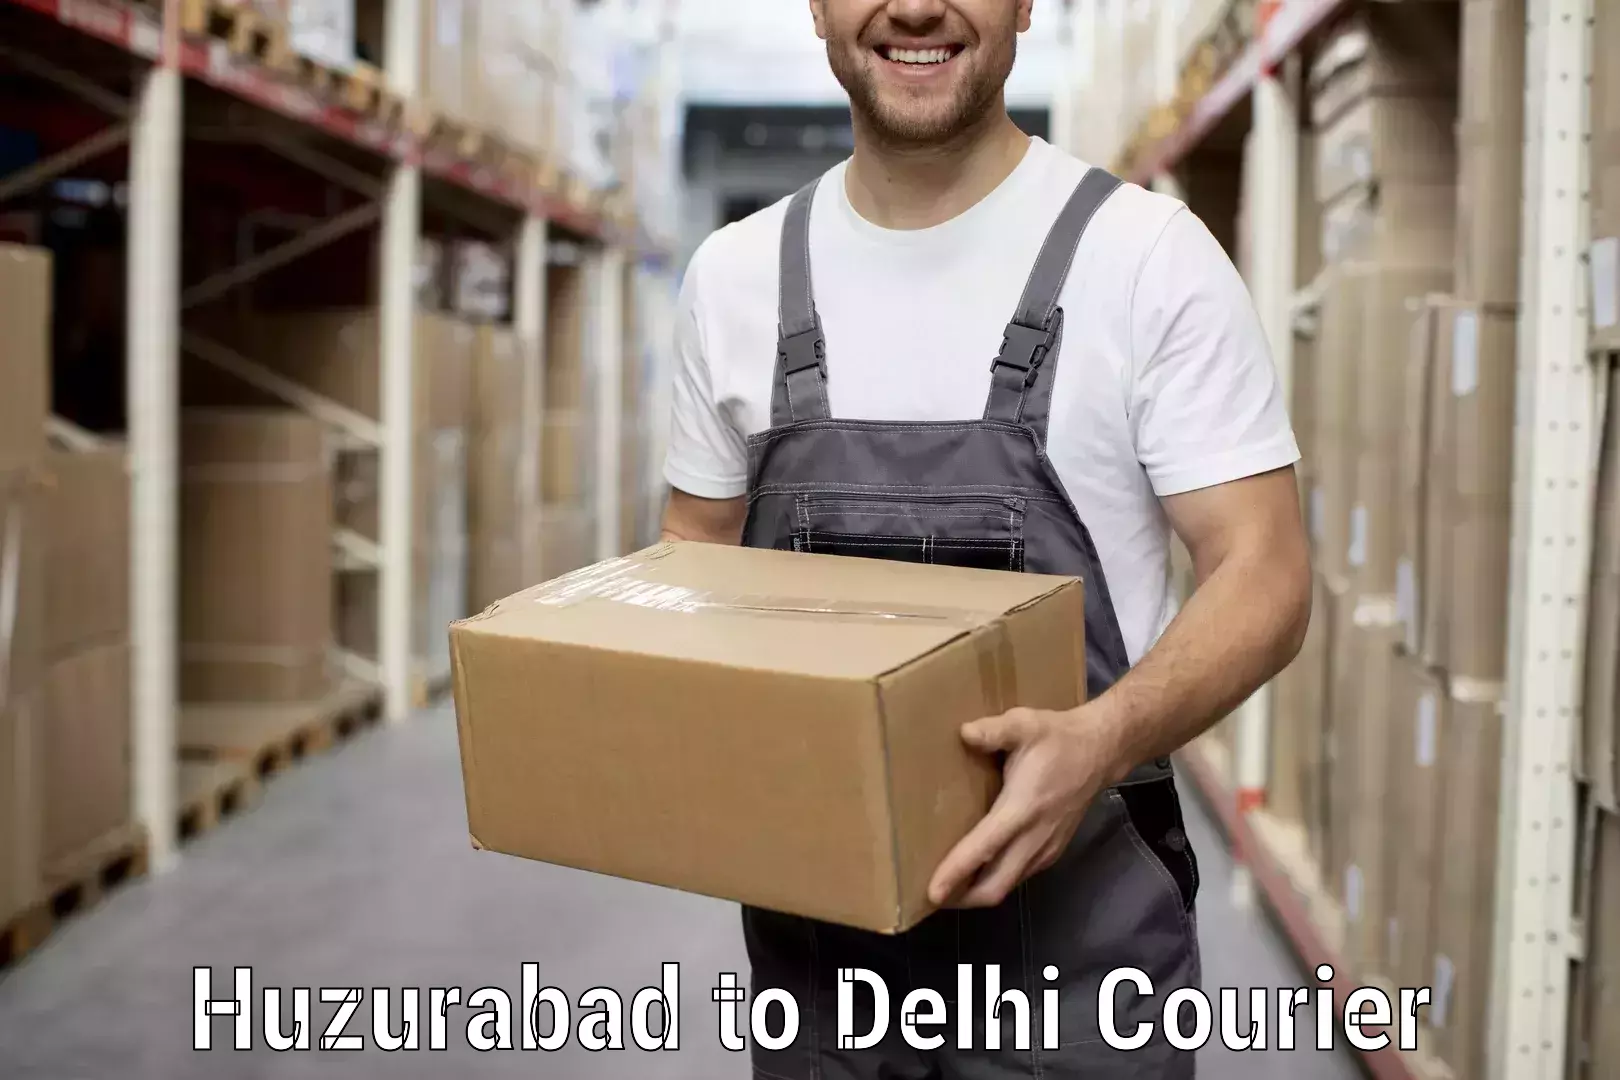 Efficient moving company Huzurabad to Delhi